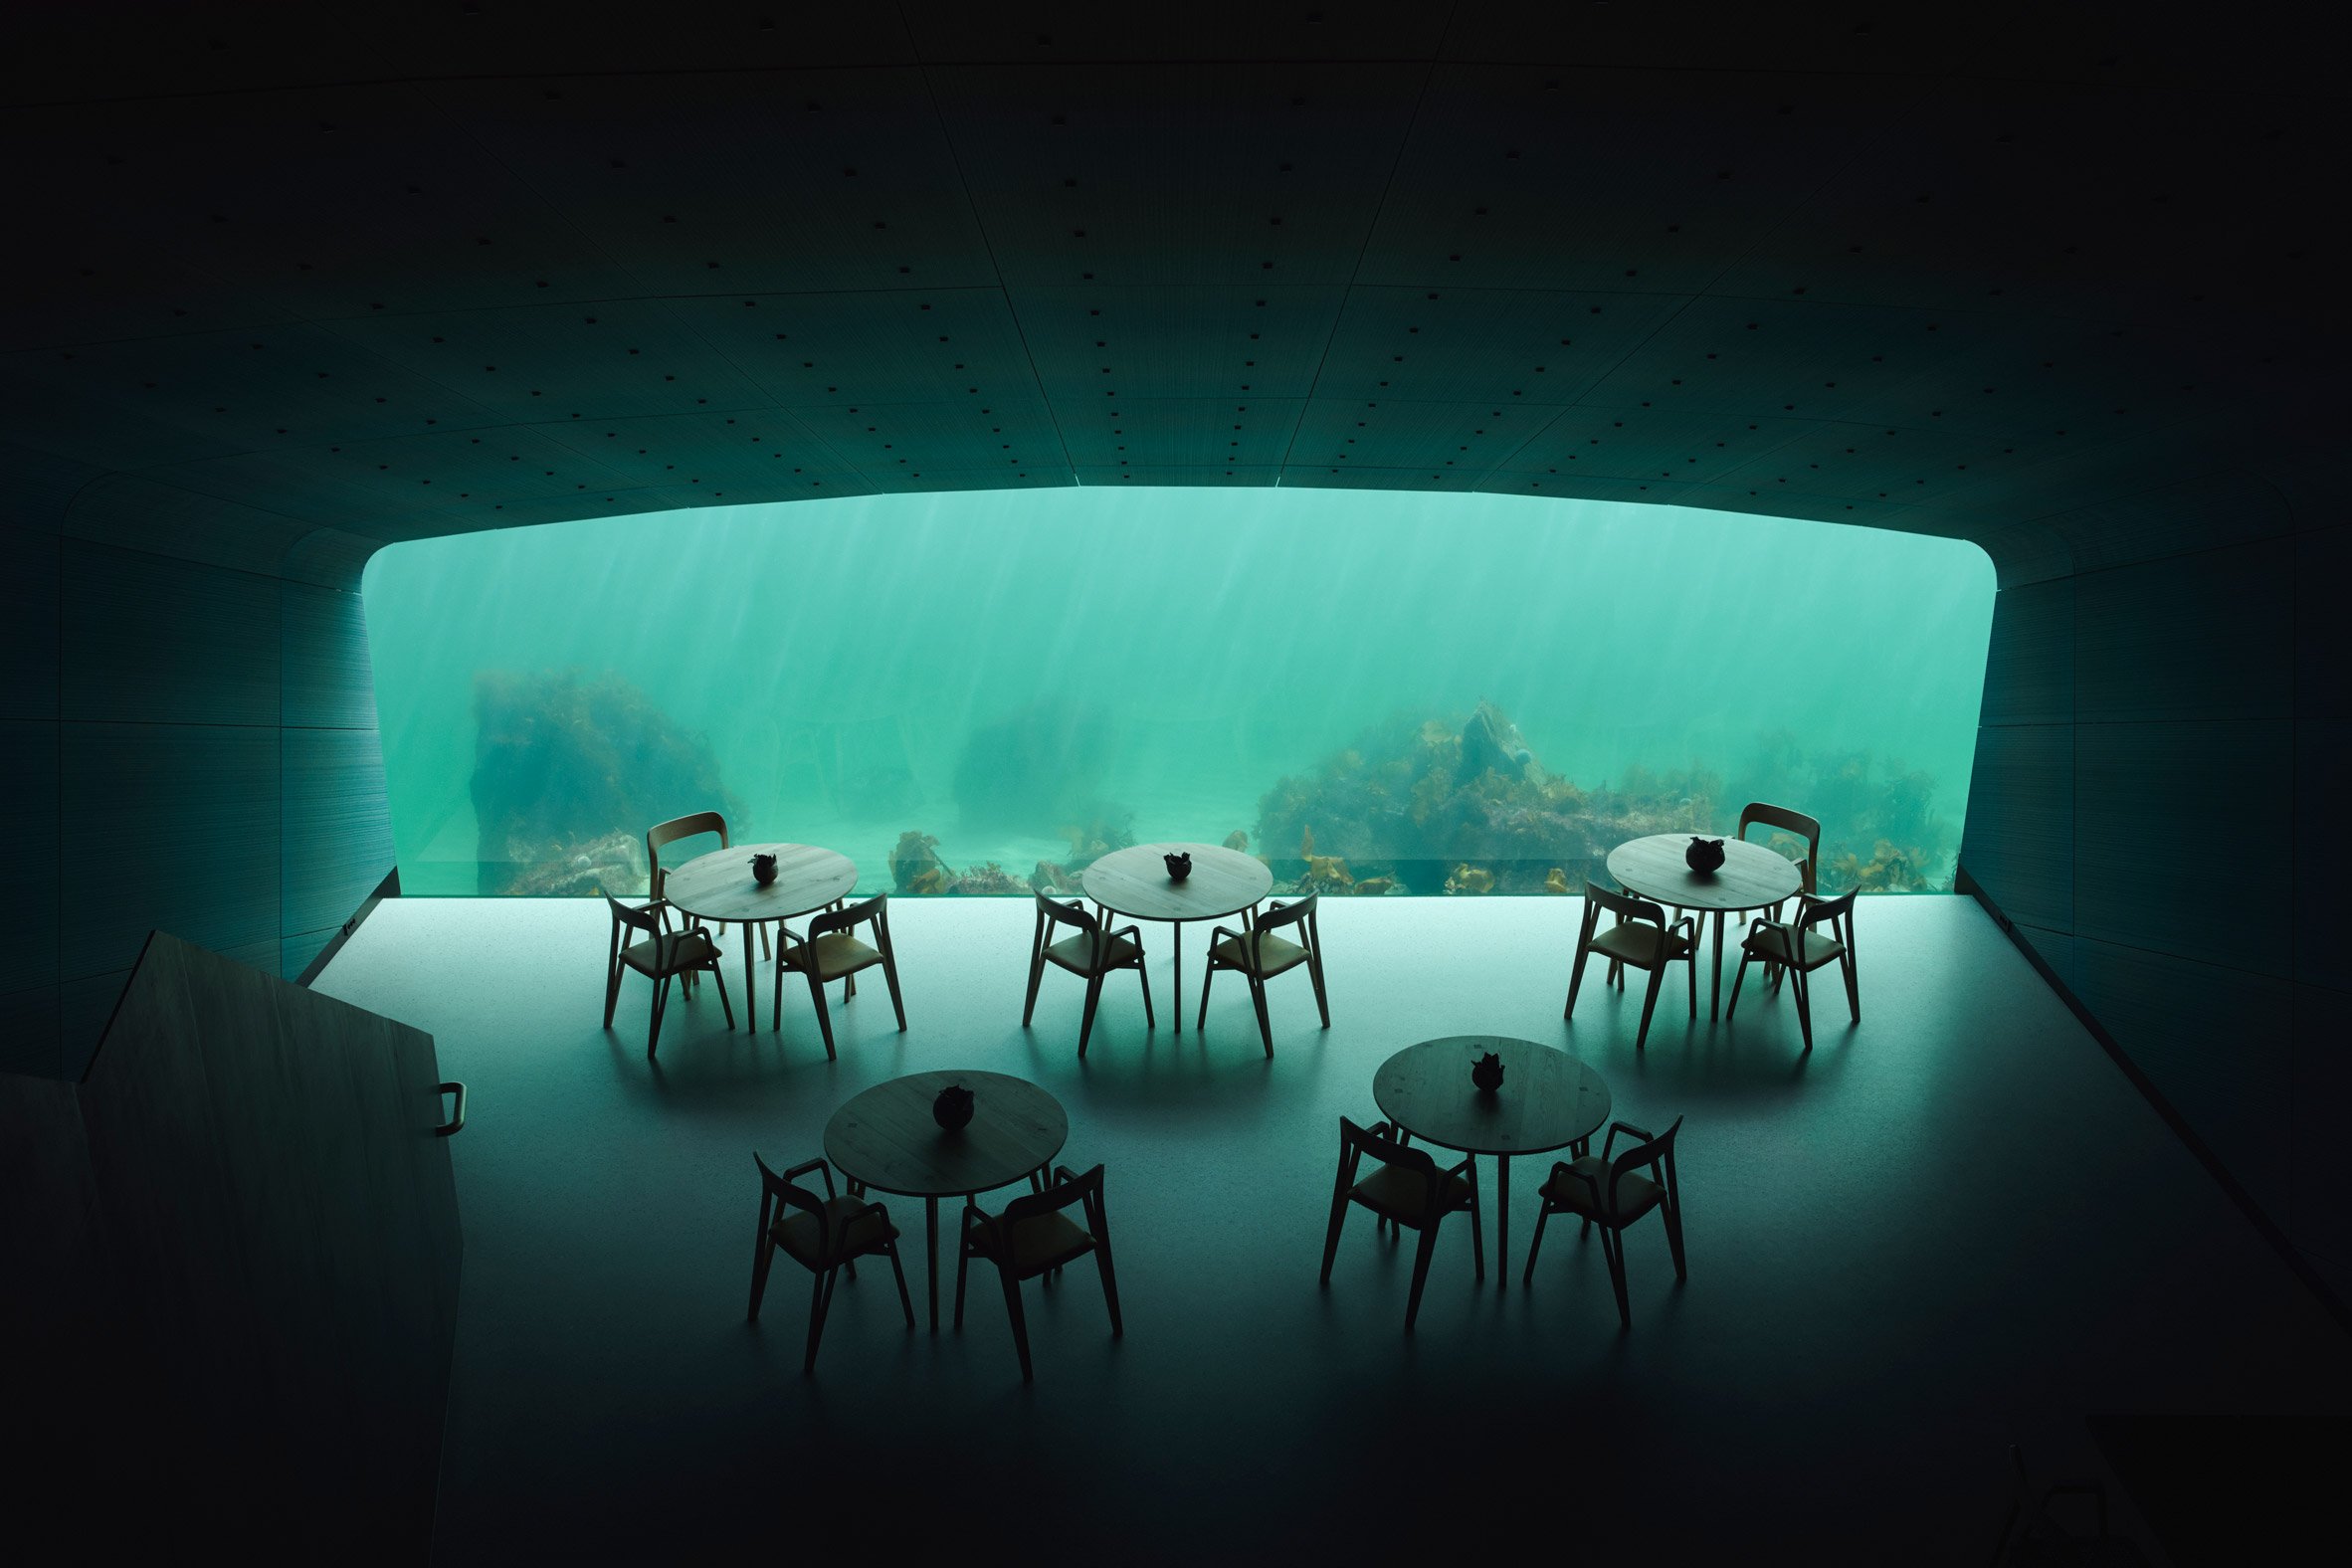 Europe's first underwater restaurant, Under, by Snohetta in Båly, south Norway